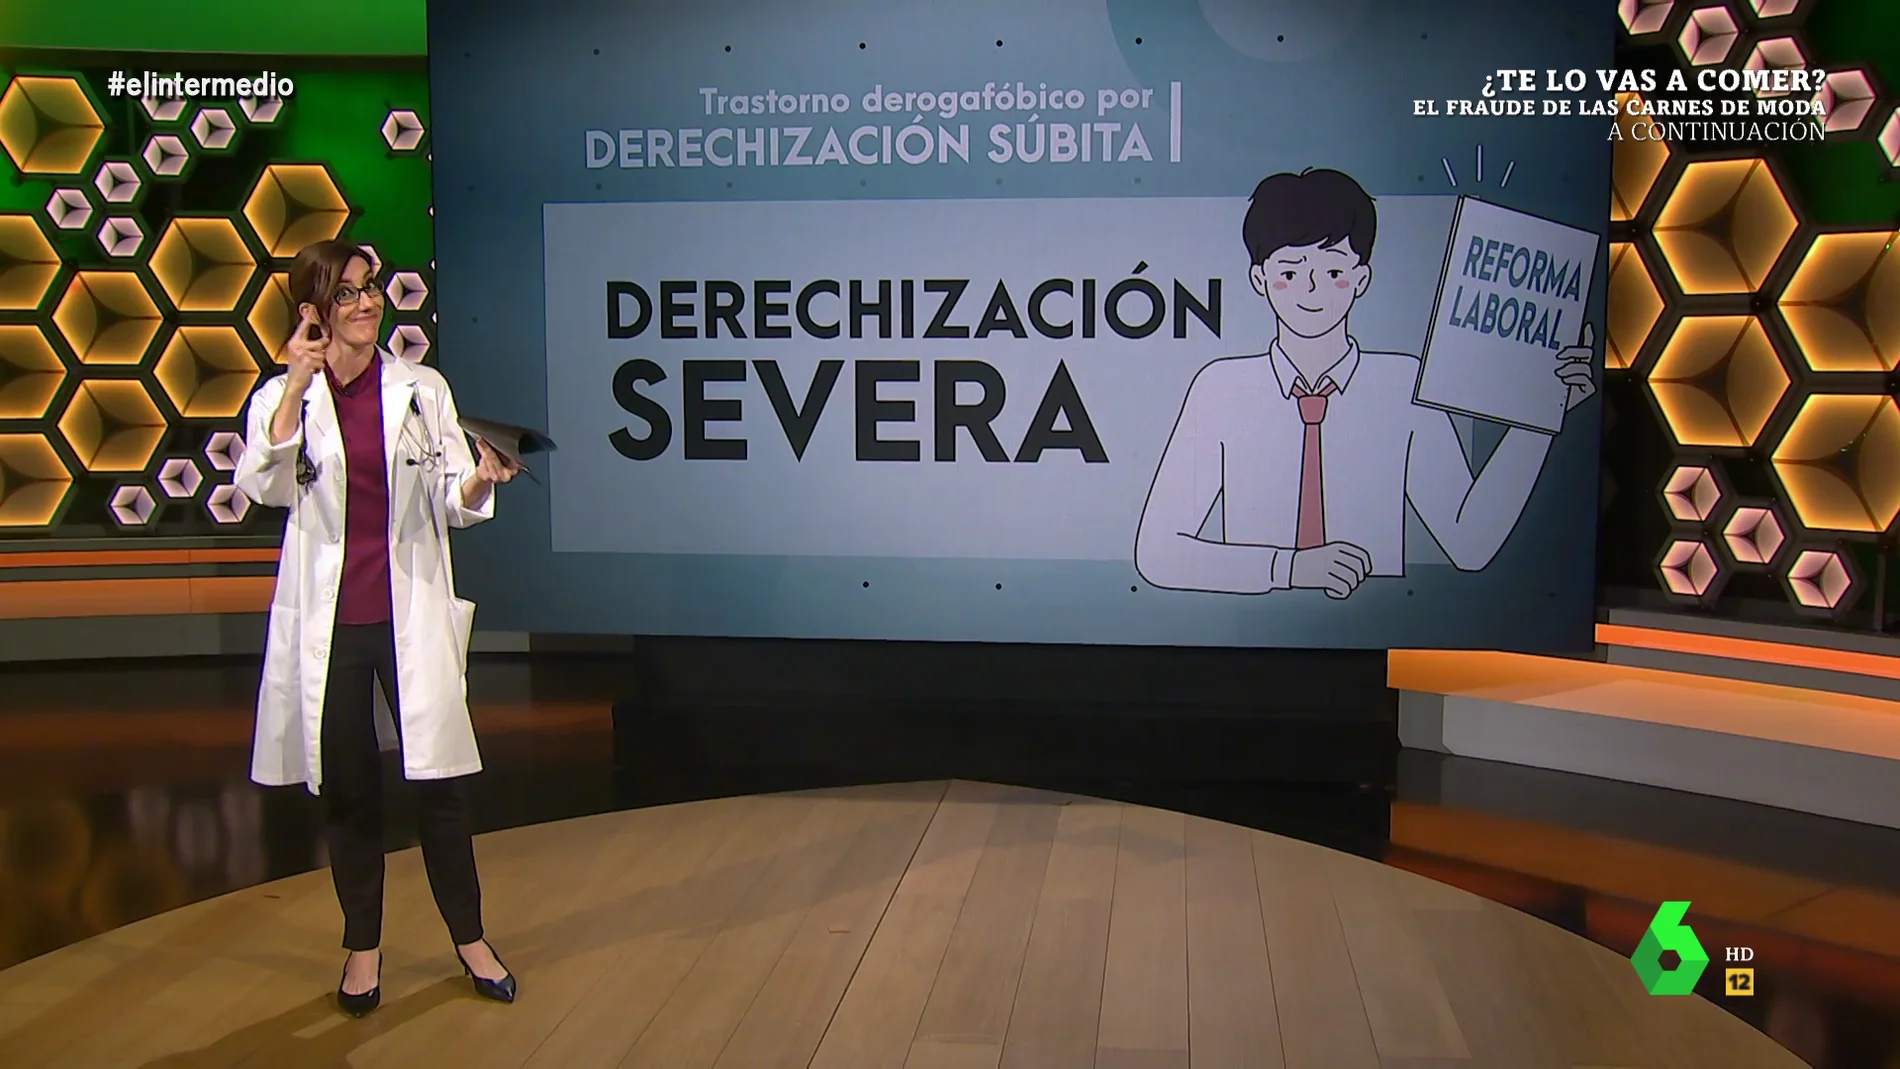 La 'médico' Cristina Gallego diagnostica el 'síndrome' del PSOE con la reforma laboral: 'Trastorno derogafóbico por derechización súbita'